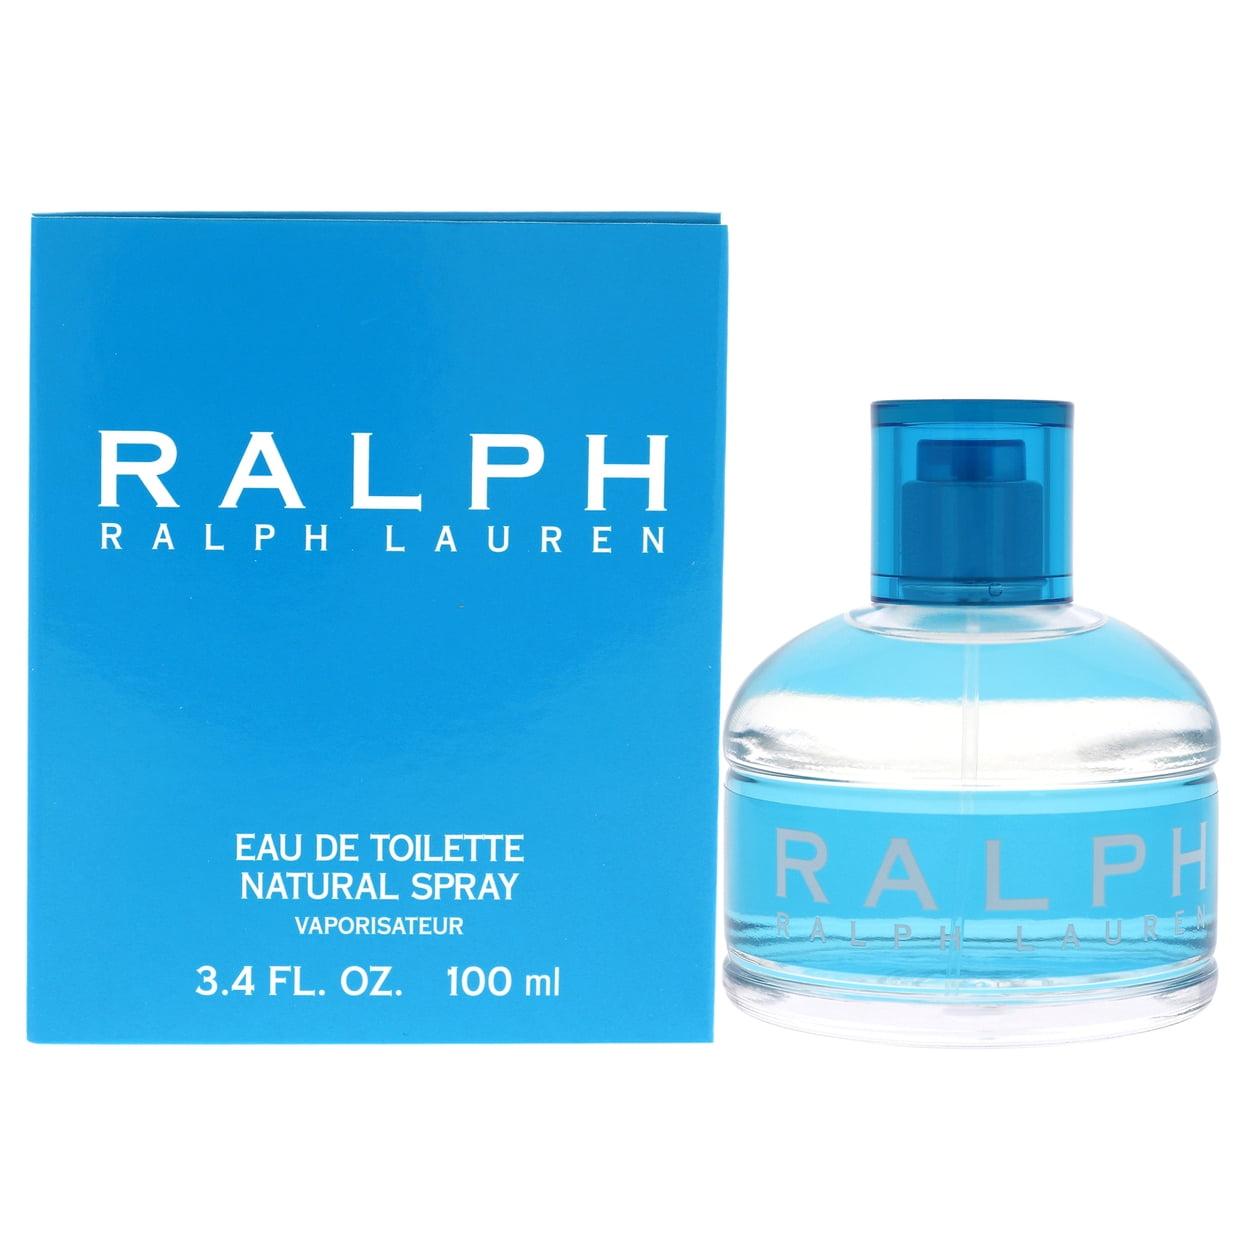 Ralph Lauren Fragrance (1990s): 13 listings